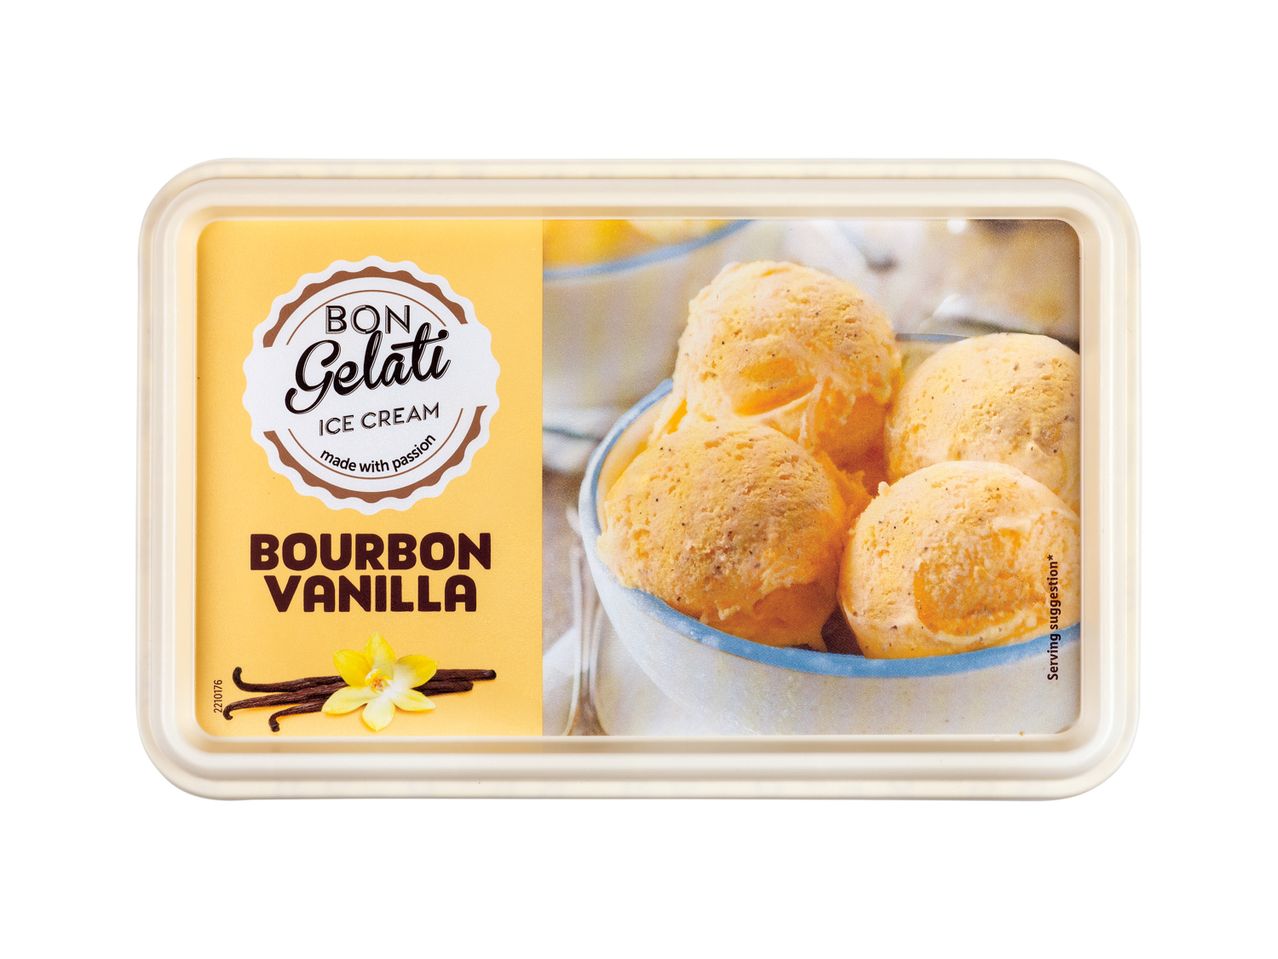 Accesați vizualizarea pe ecran complet: Înghețată de vanilie (aromă Bourbon) - Imagine 1